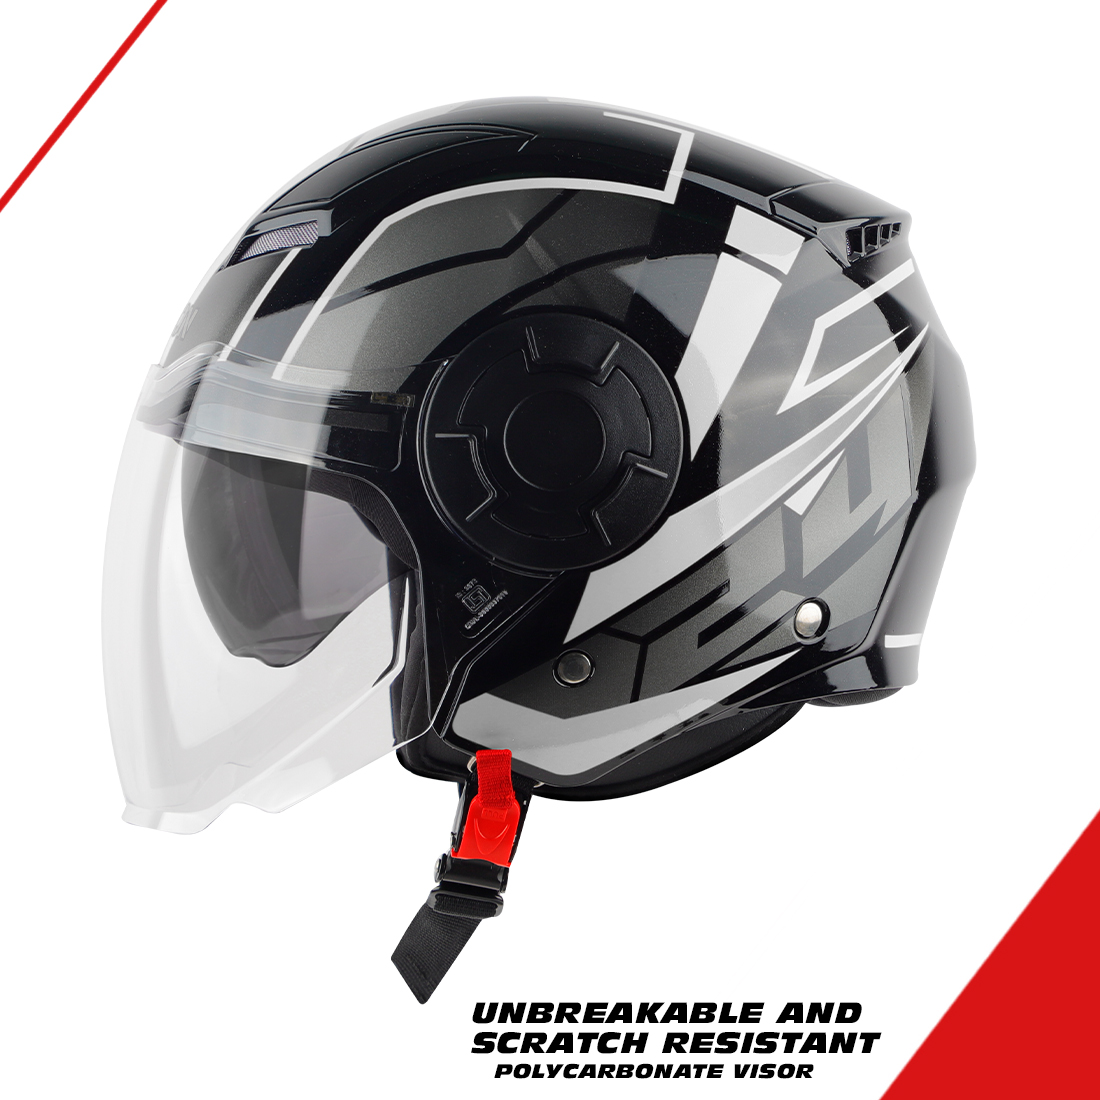 Steelbird SBH-31 Baron 24 ISI Certified Open Face Helmet For Men And Women With Inner Sun Shield(Dual Visor Mechanism) (Matt Black Grey)